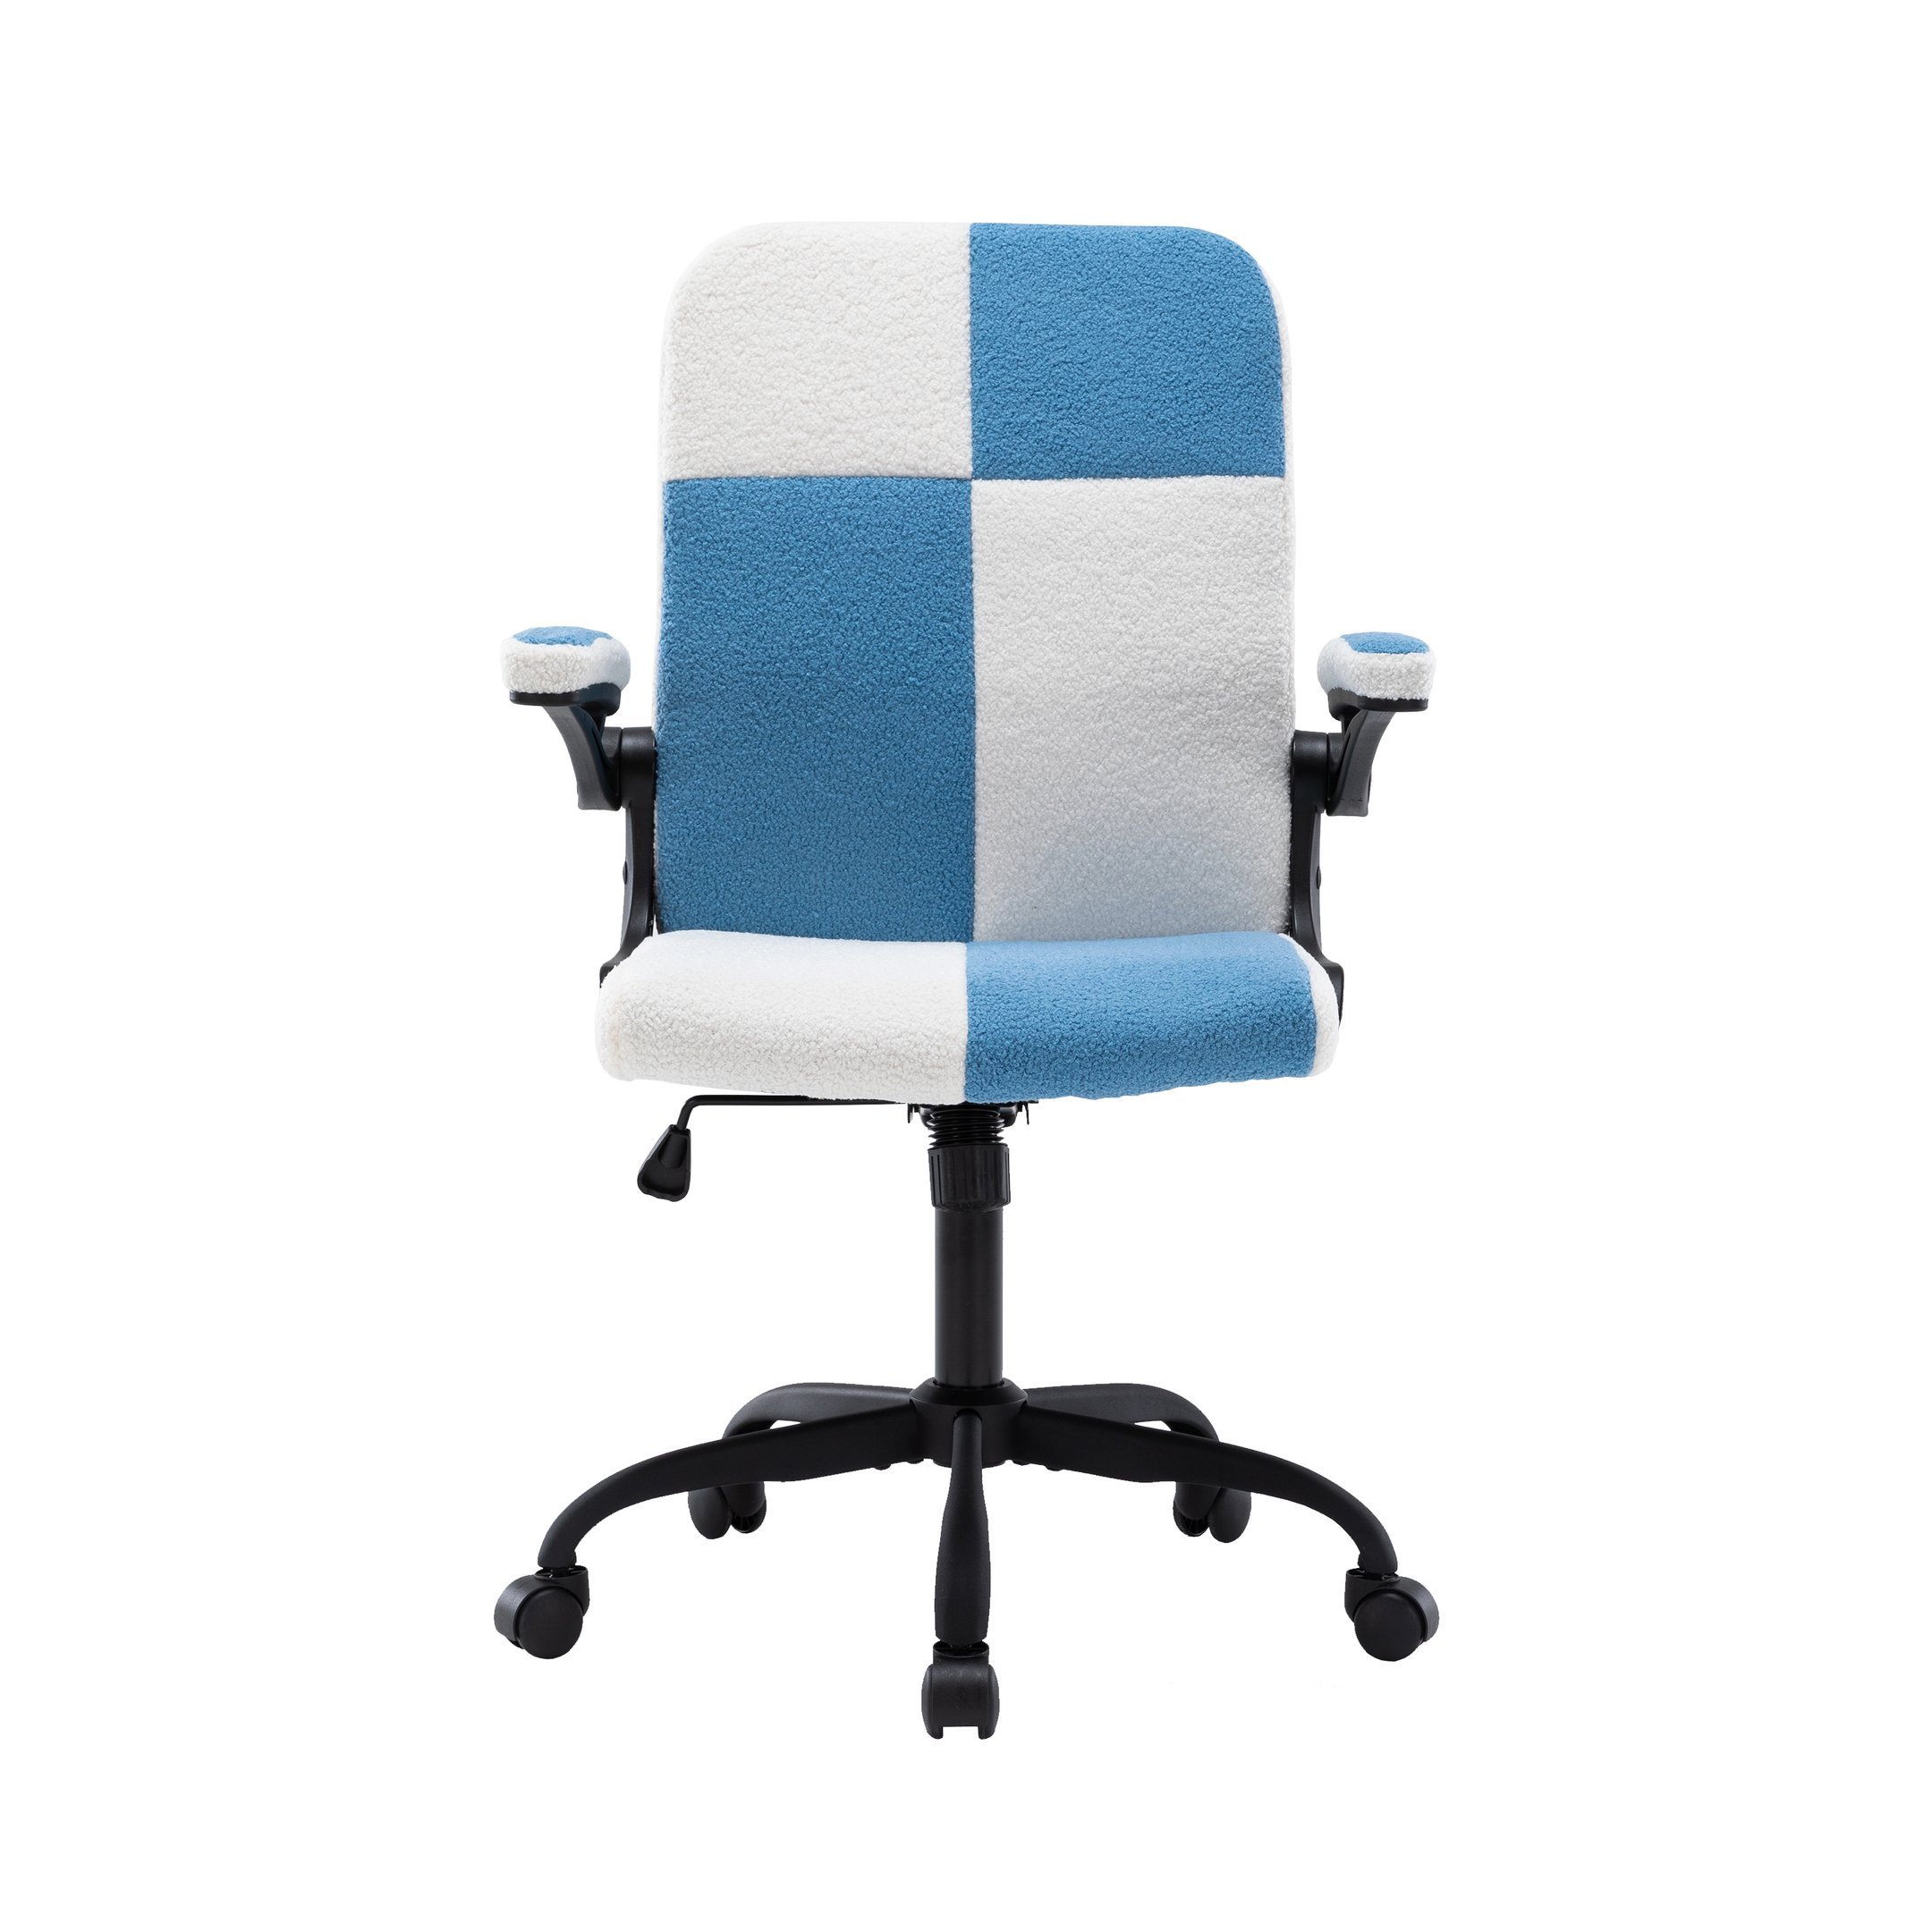 Cadeira Yamasoro Home Office Confortável Tecido Carapinha Macio com Apoio para Lombar (Azul e Branco